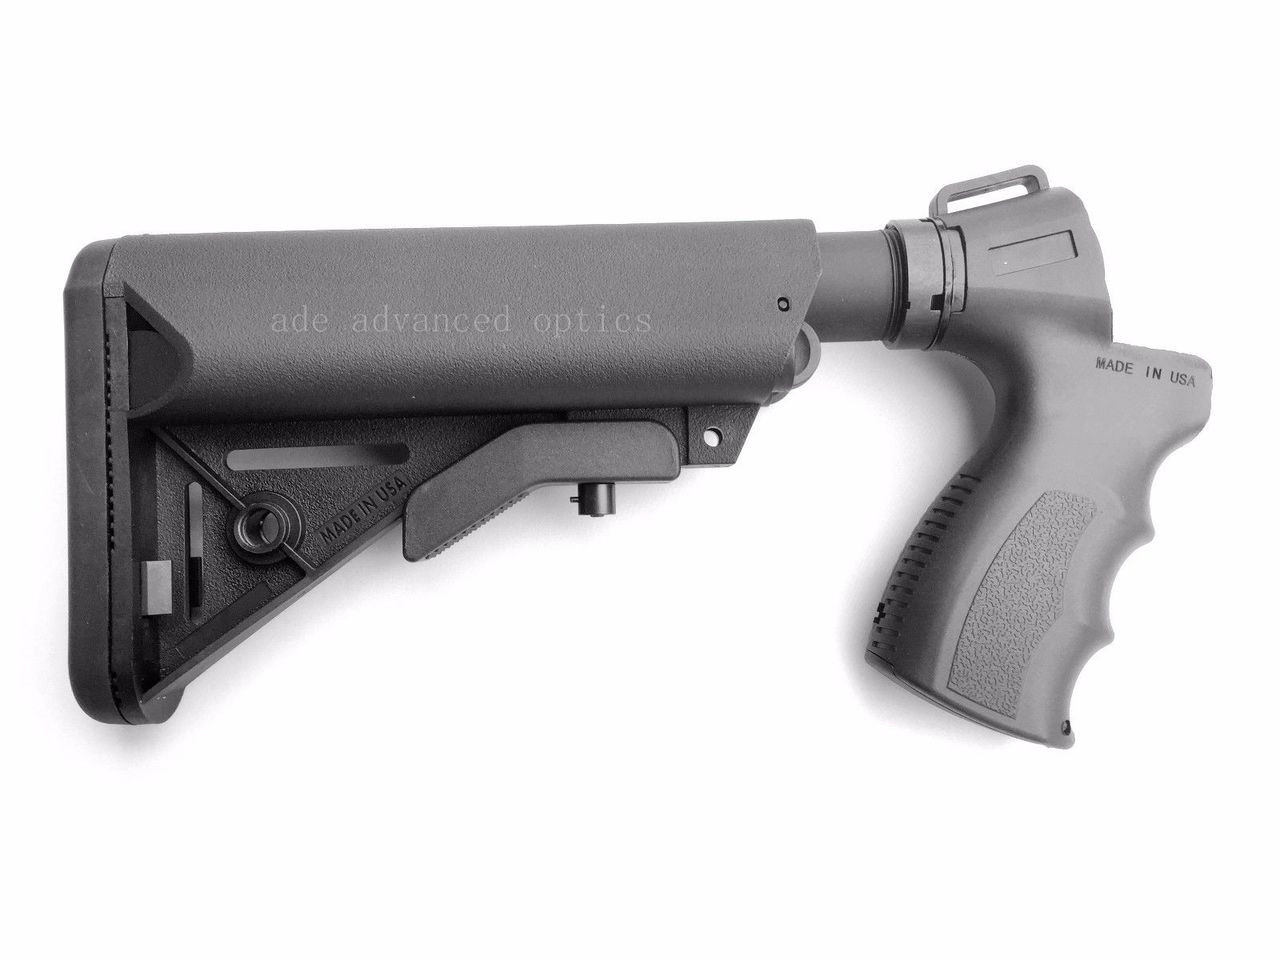 Gen 3 Stock + Pistol Grip + COMPLETE KIT for Mossberg 500 590 535 Shotgun-img-0